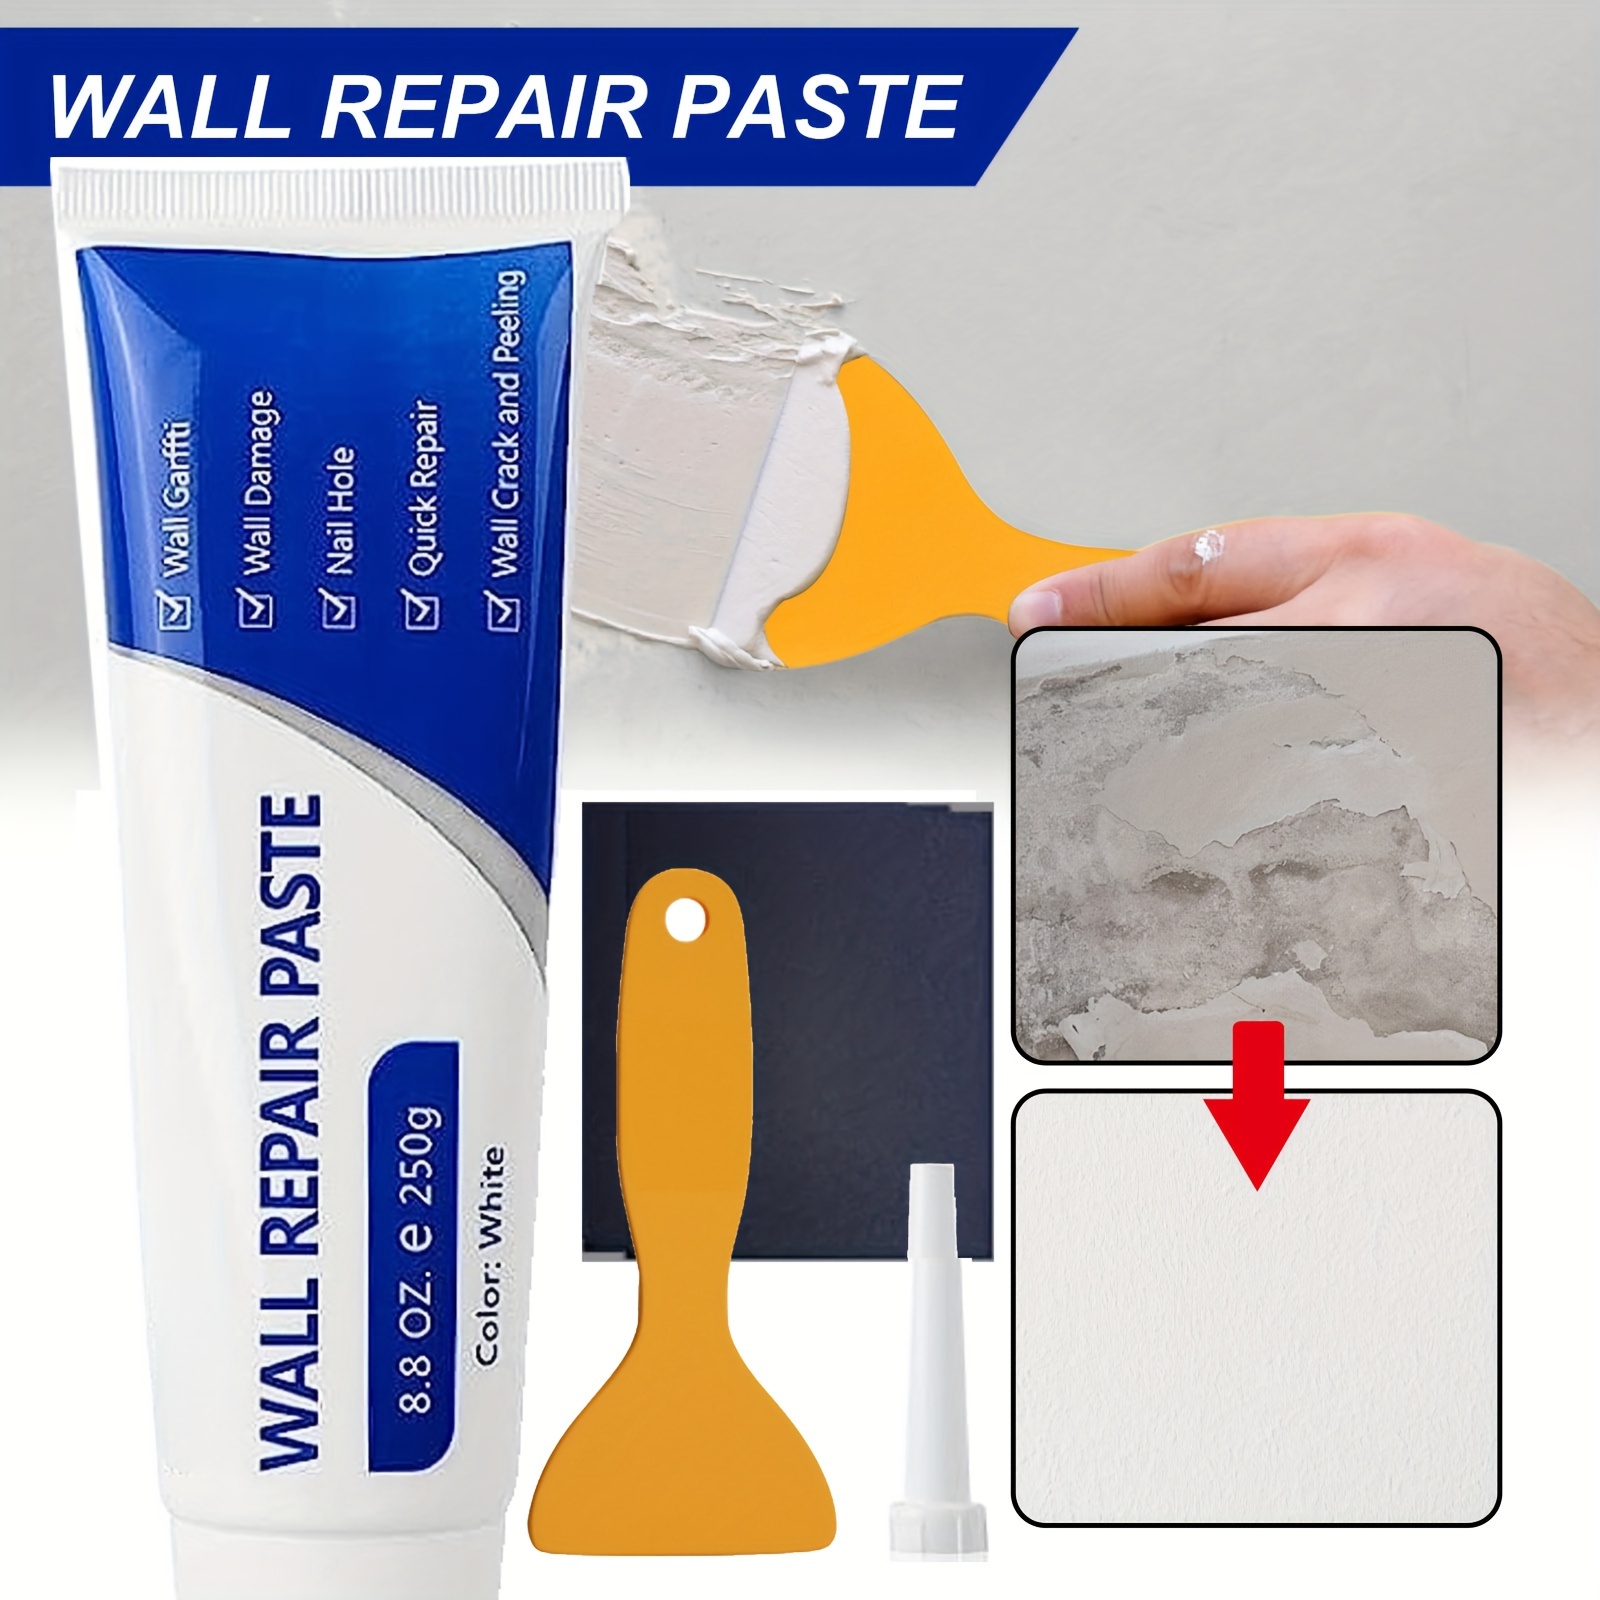 Kit de réparation murale-kit de réparation de cloisons sèches-agent de  réparation de mur sans danger pour plâtre, plafond et feuille mur sec